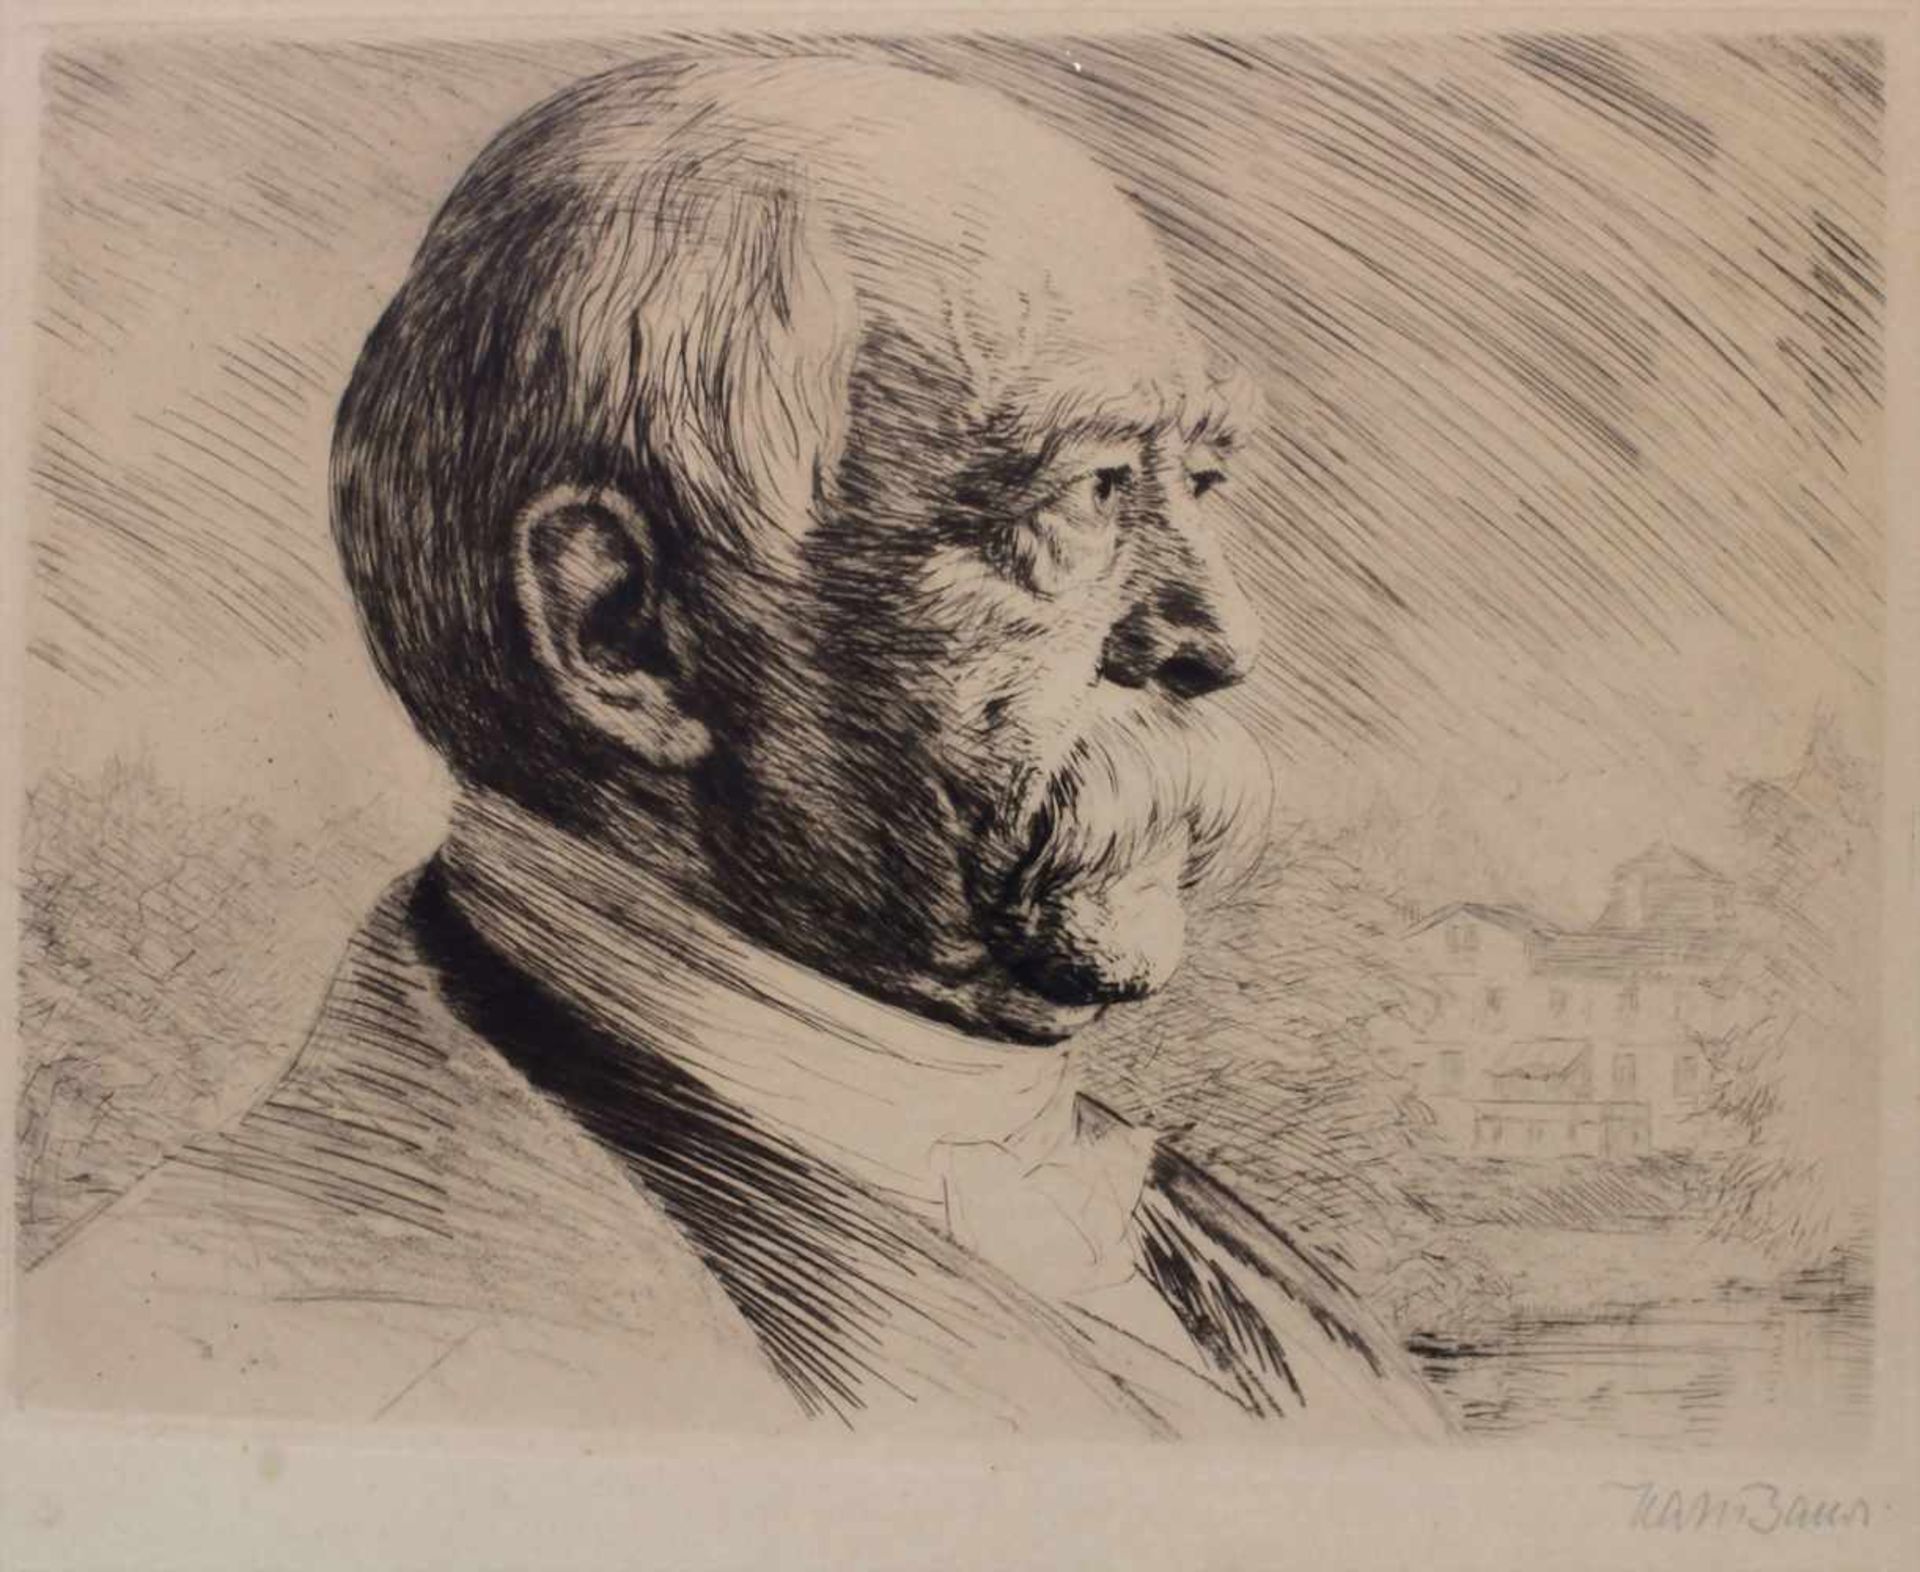 Hans Baur (1829-1897), Porträts 'Bismarck' und 'Friedrich II' / 2 portraits 'Bismarck' and ' - Image 2 of 11